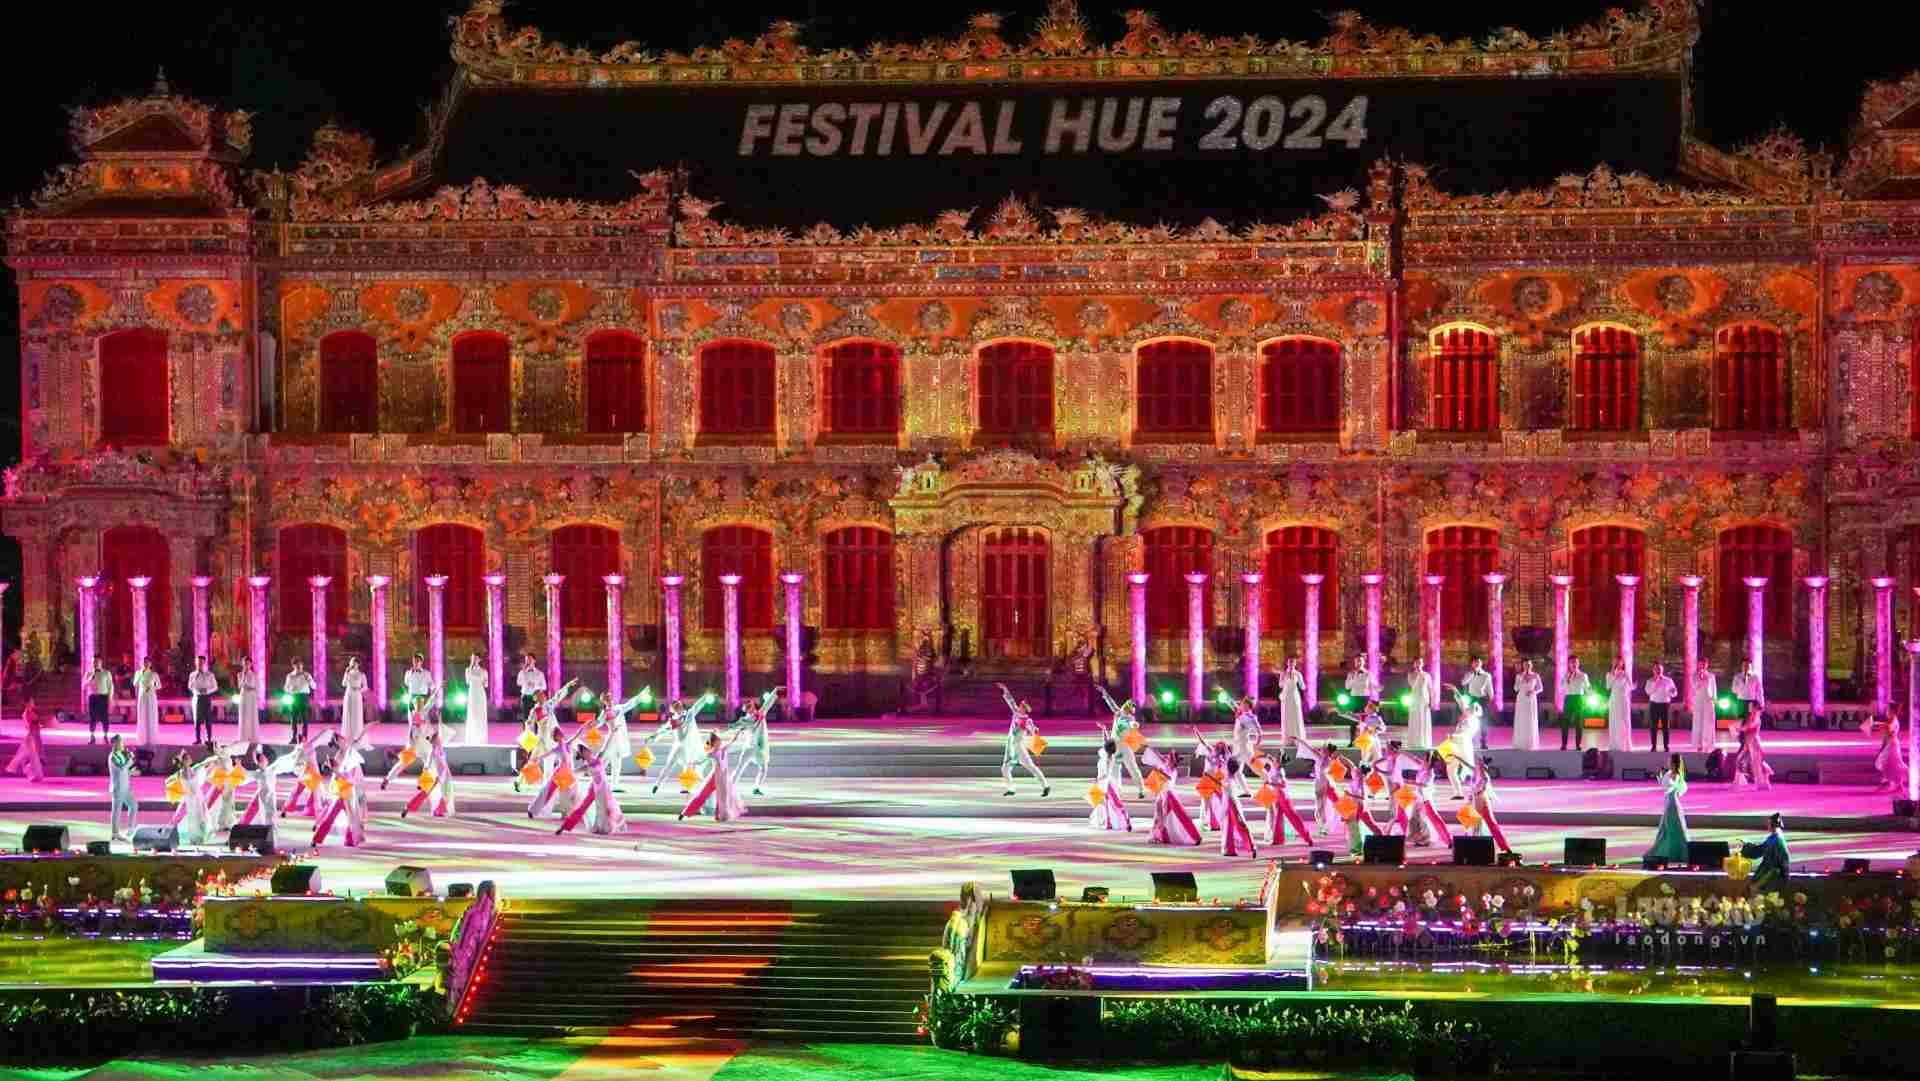 Đêm nghệ thuật bế mạc “Về Huế Festival” tại điện Kiến Trung được dàn dựng công phu, với 10 tiết mục đặc sắc, kết hợp bắn pháo hoa đã mang lại bữa tiệc nghệ thuật đặc sắc, đậm chất riêng, tạo nên không gian giao thoa sống động giữa truyền thống và hiện đại.